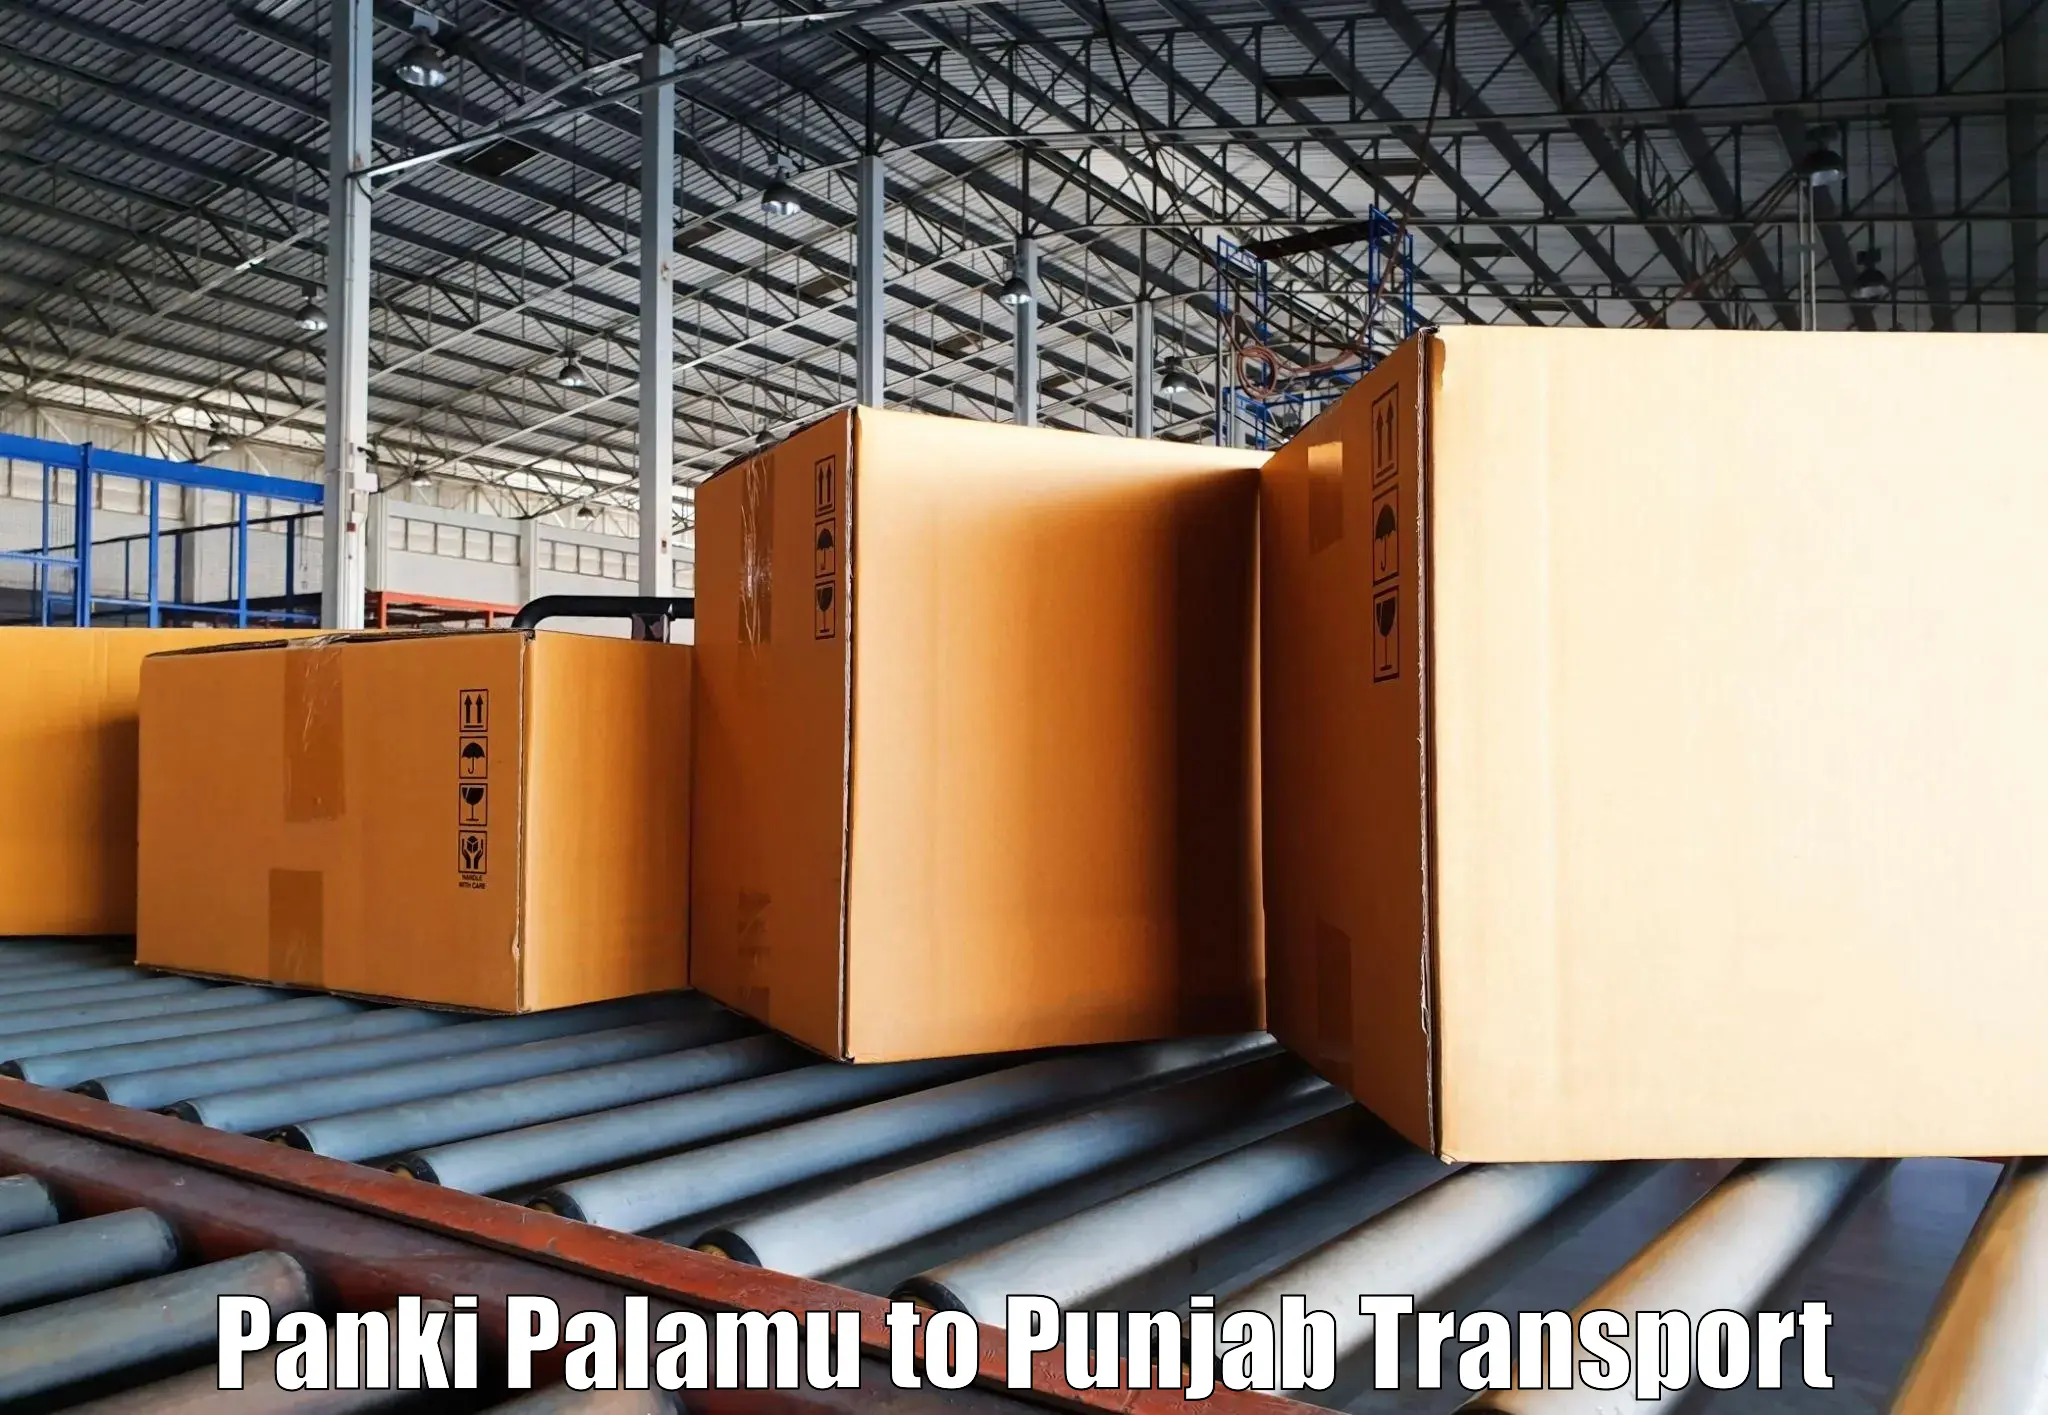 Transport in sharing Panki Palamu to Punjab